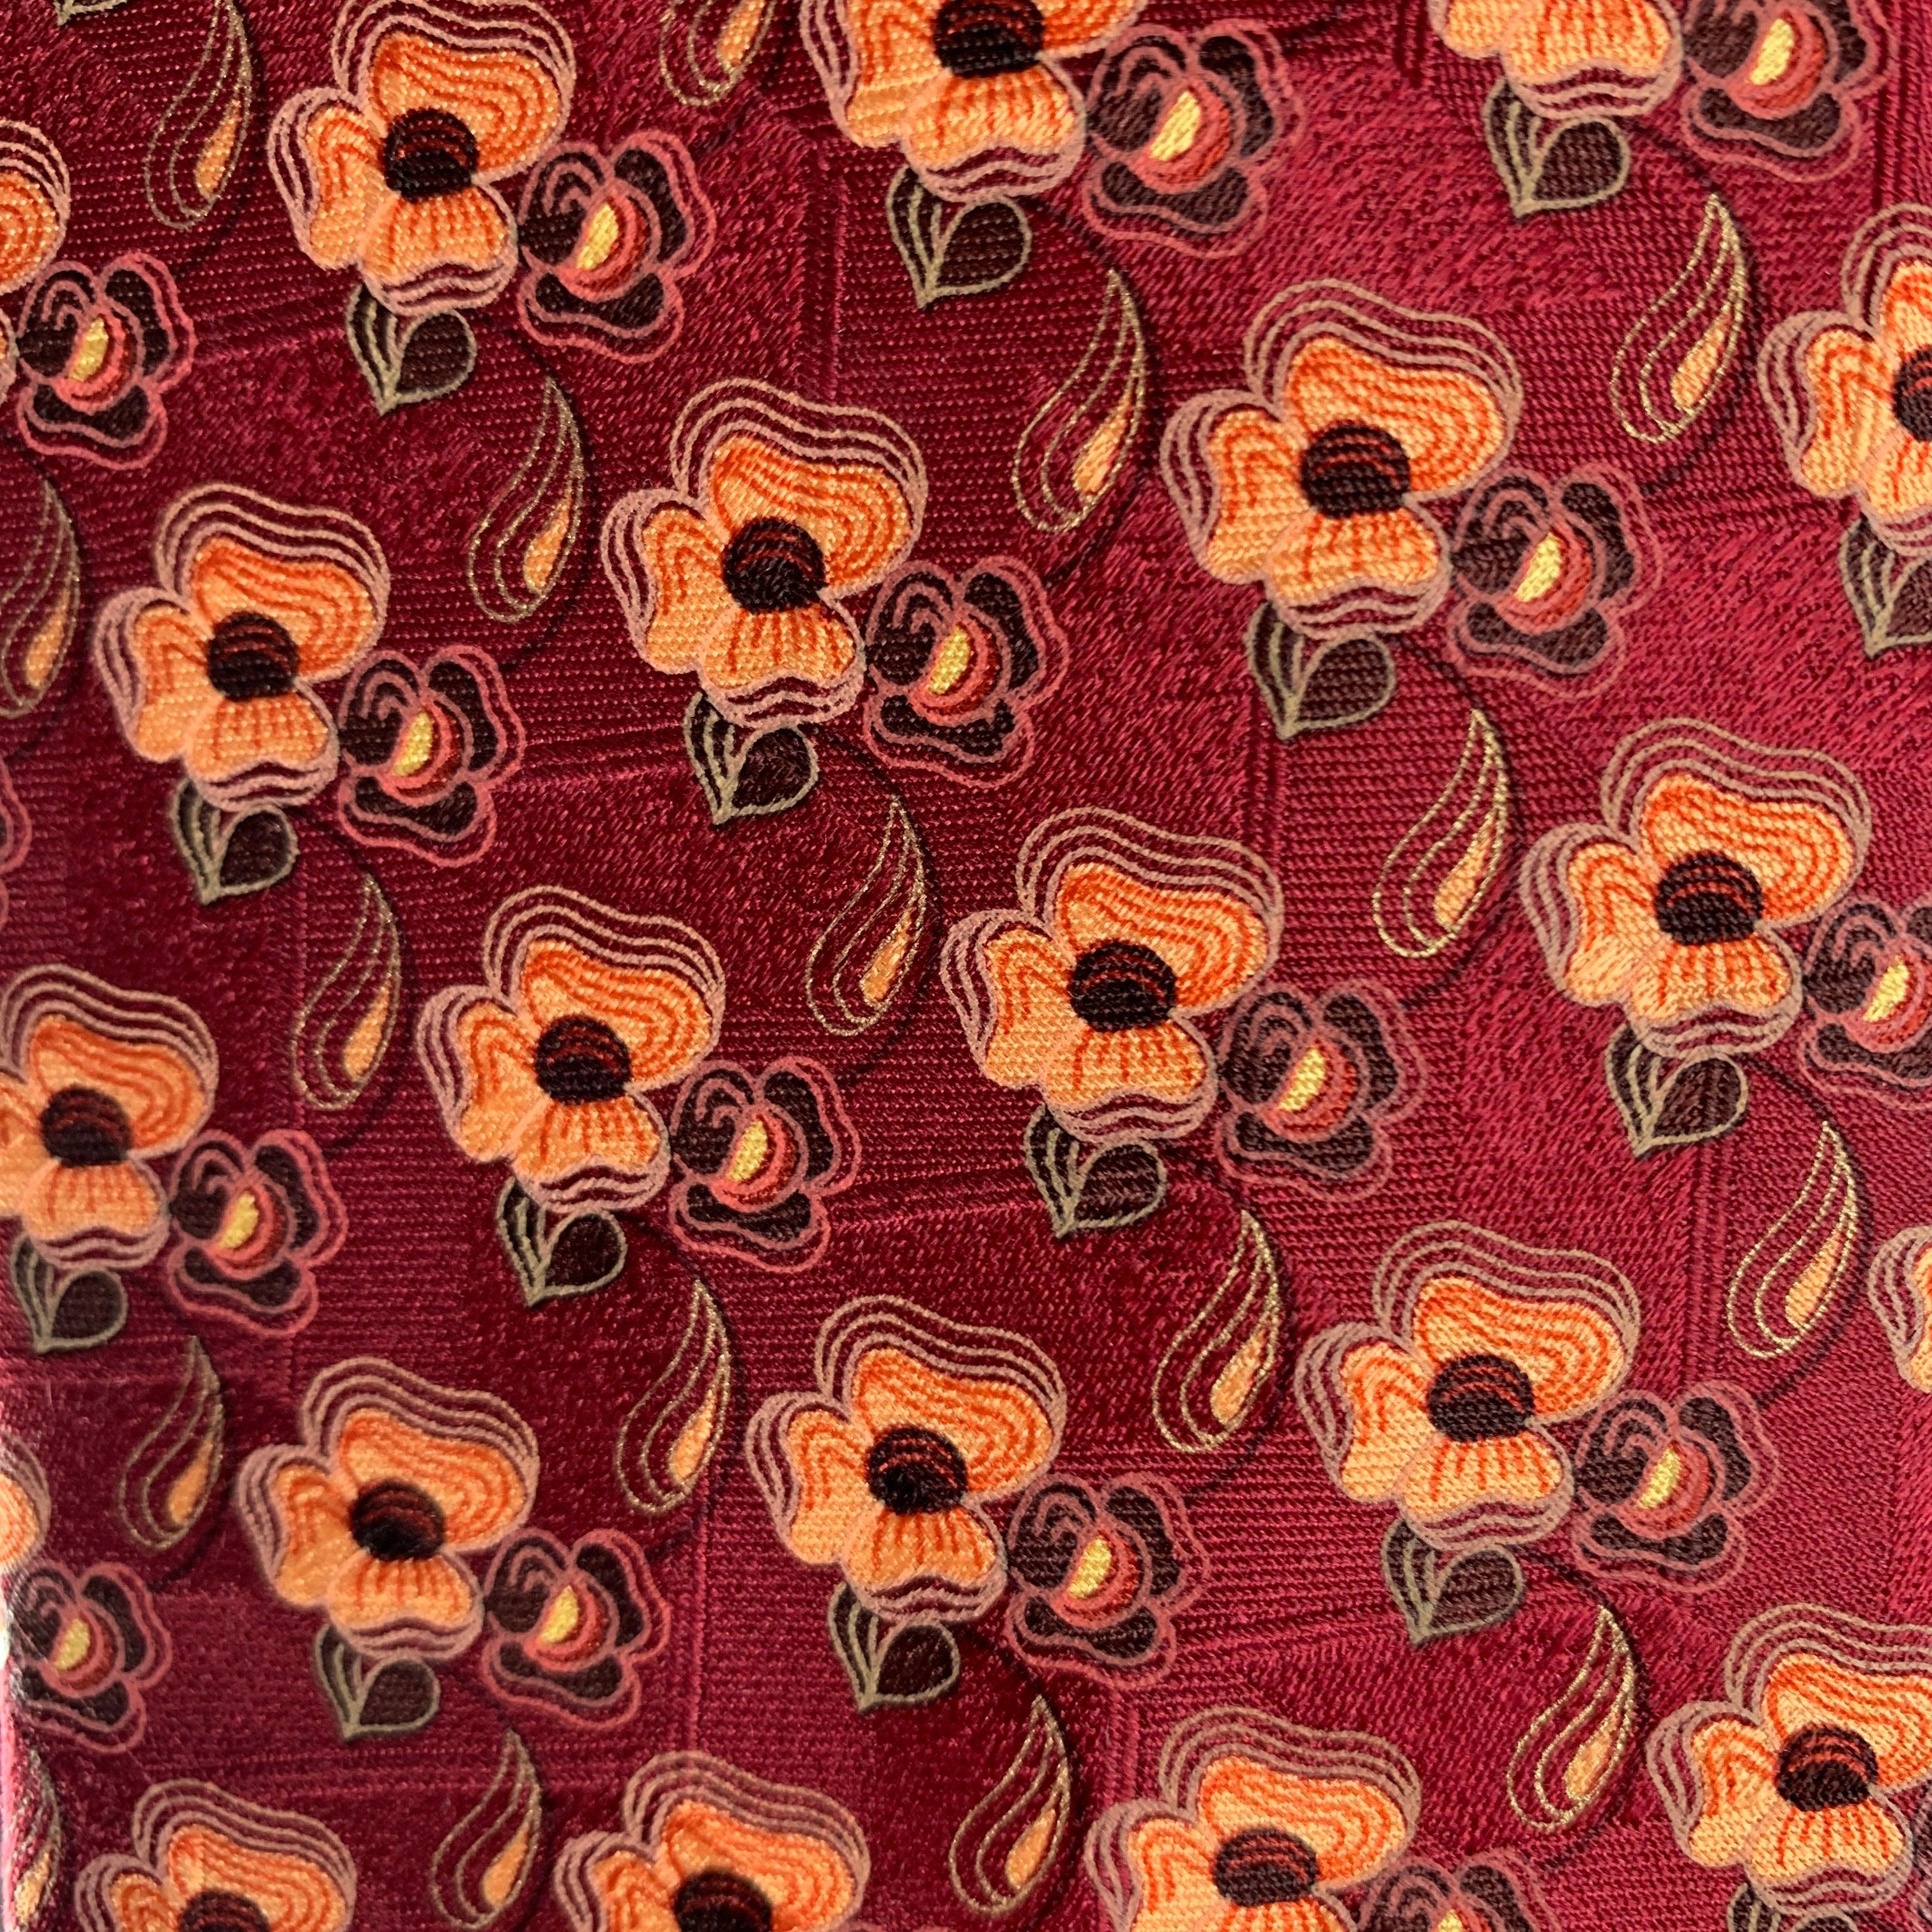 ERMENEGILDO ZEGNA Krawatte in Burgunderrot mit orangefarbenem Blumenmuster. 100% Seide. Hergestellt in Italien.
Sehr guter gebrauchter Zustand.
 

Abmessungen: 
  Breite: 3 Zoll Länge: 58 Zoll 


  
  
 
Sui Generis-Referenz: 124771
Kategorie: